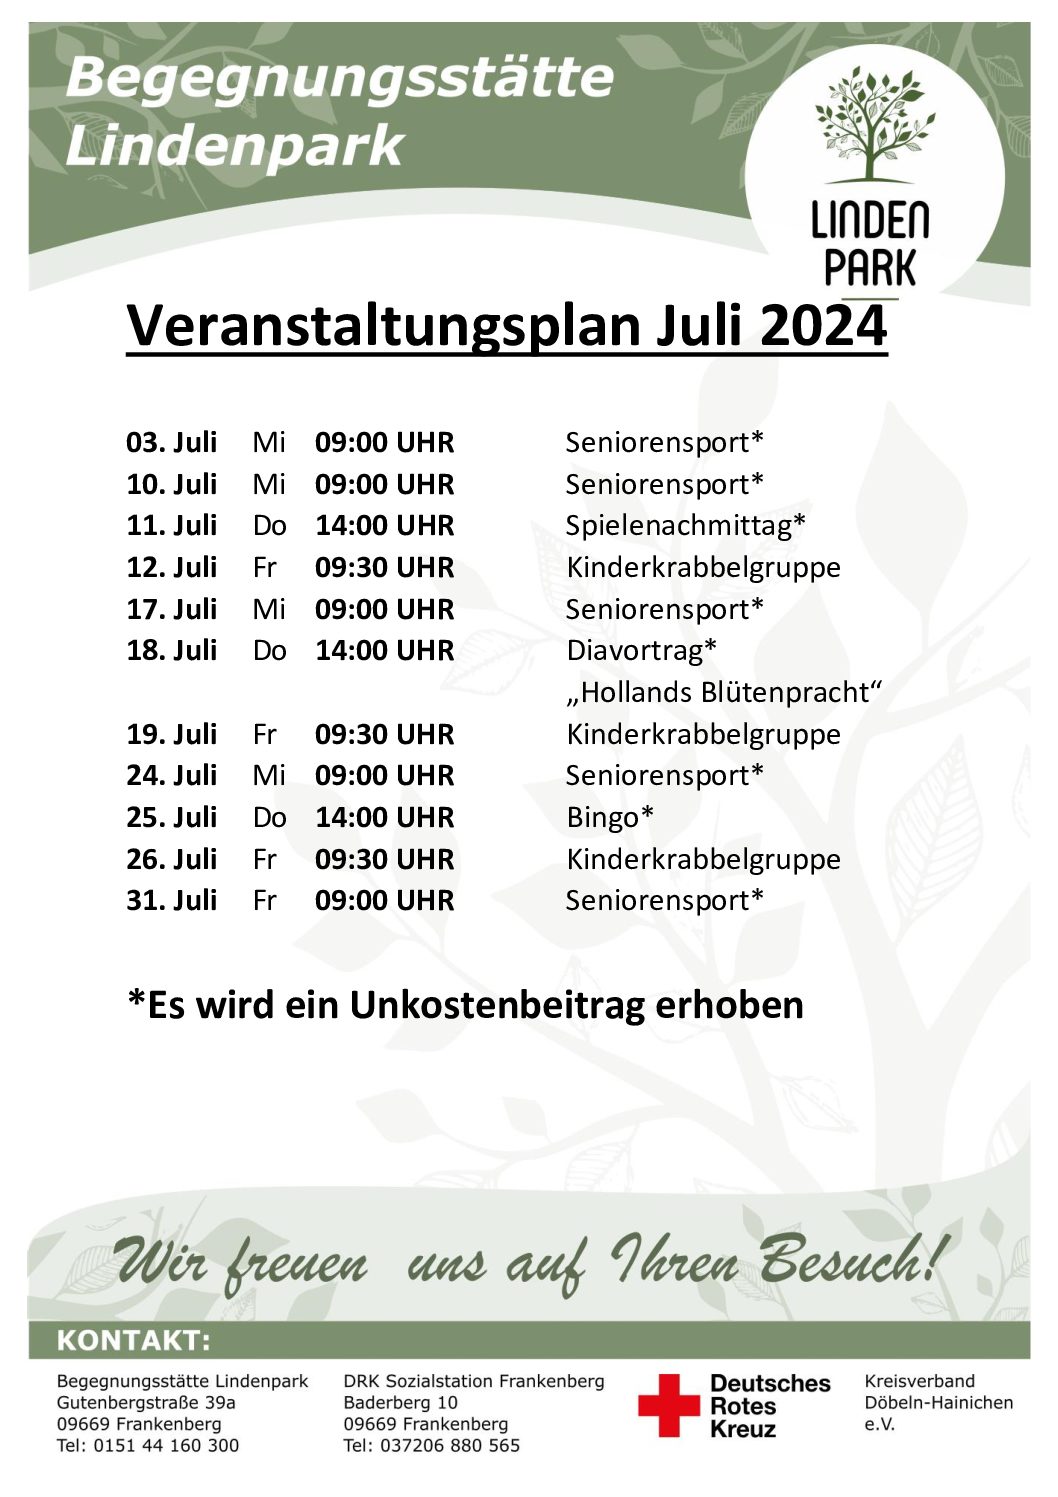 Veranstaltungsplan Juli 2024 der Begegnungsstätte Lindenpark